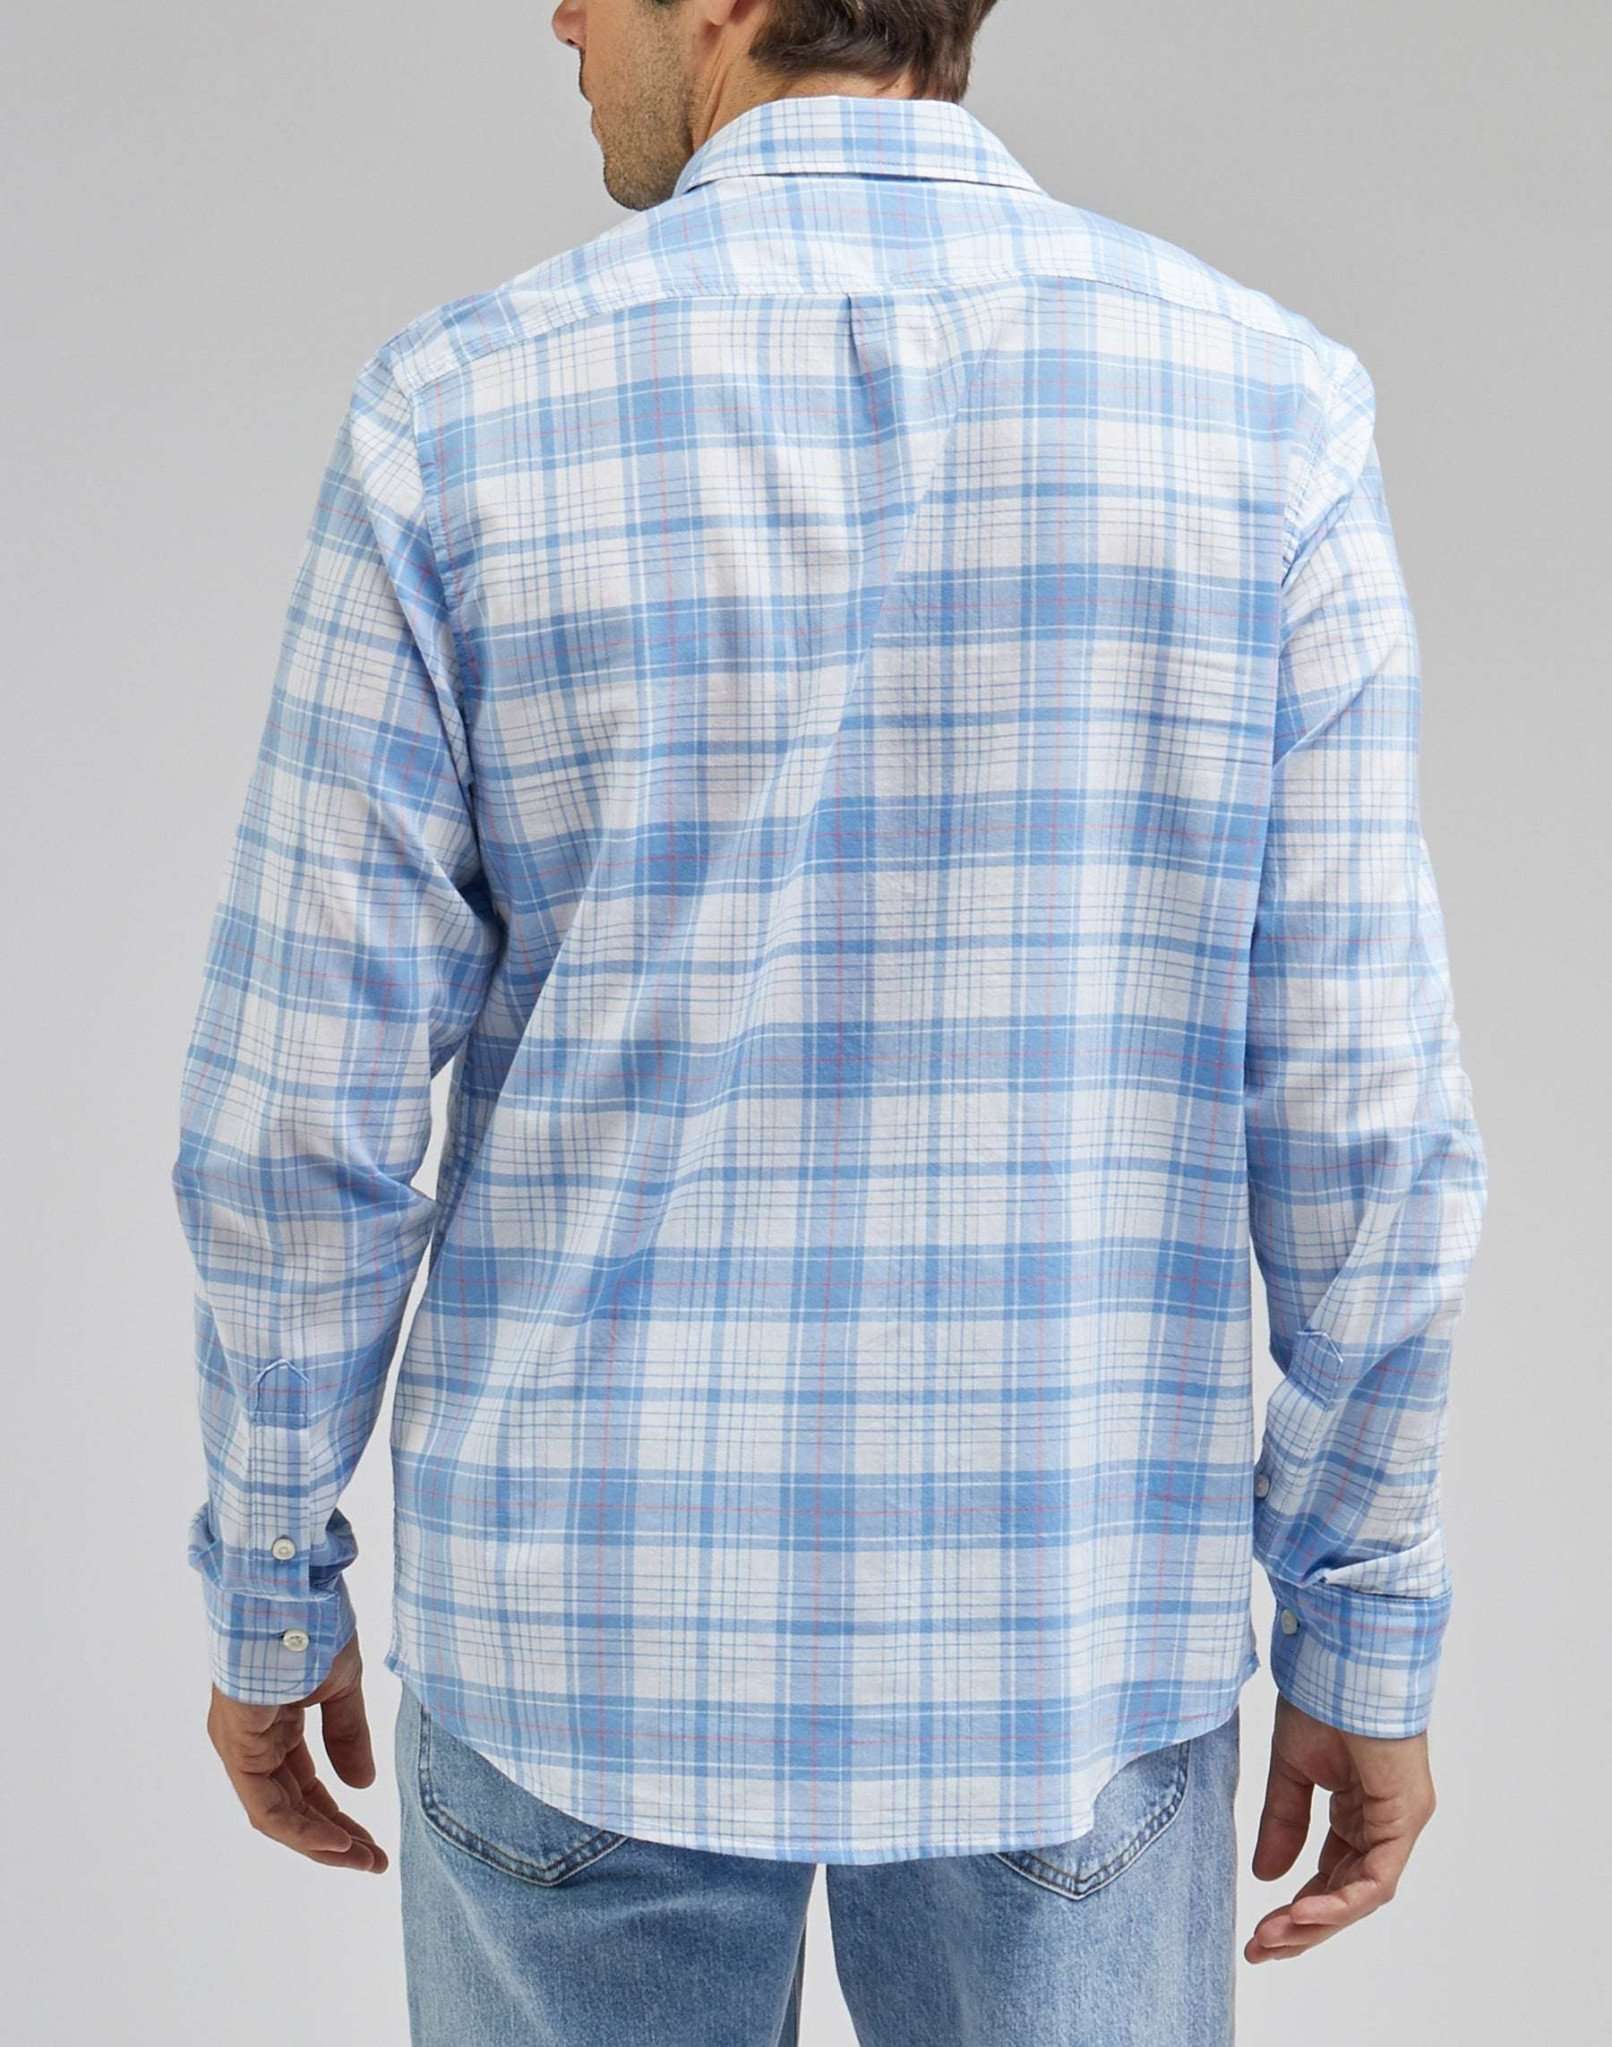 Button Down Shirt in Prep Blue Hemden Lee   